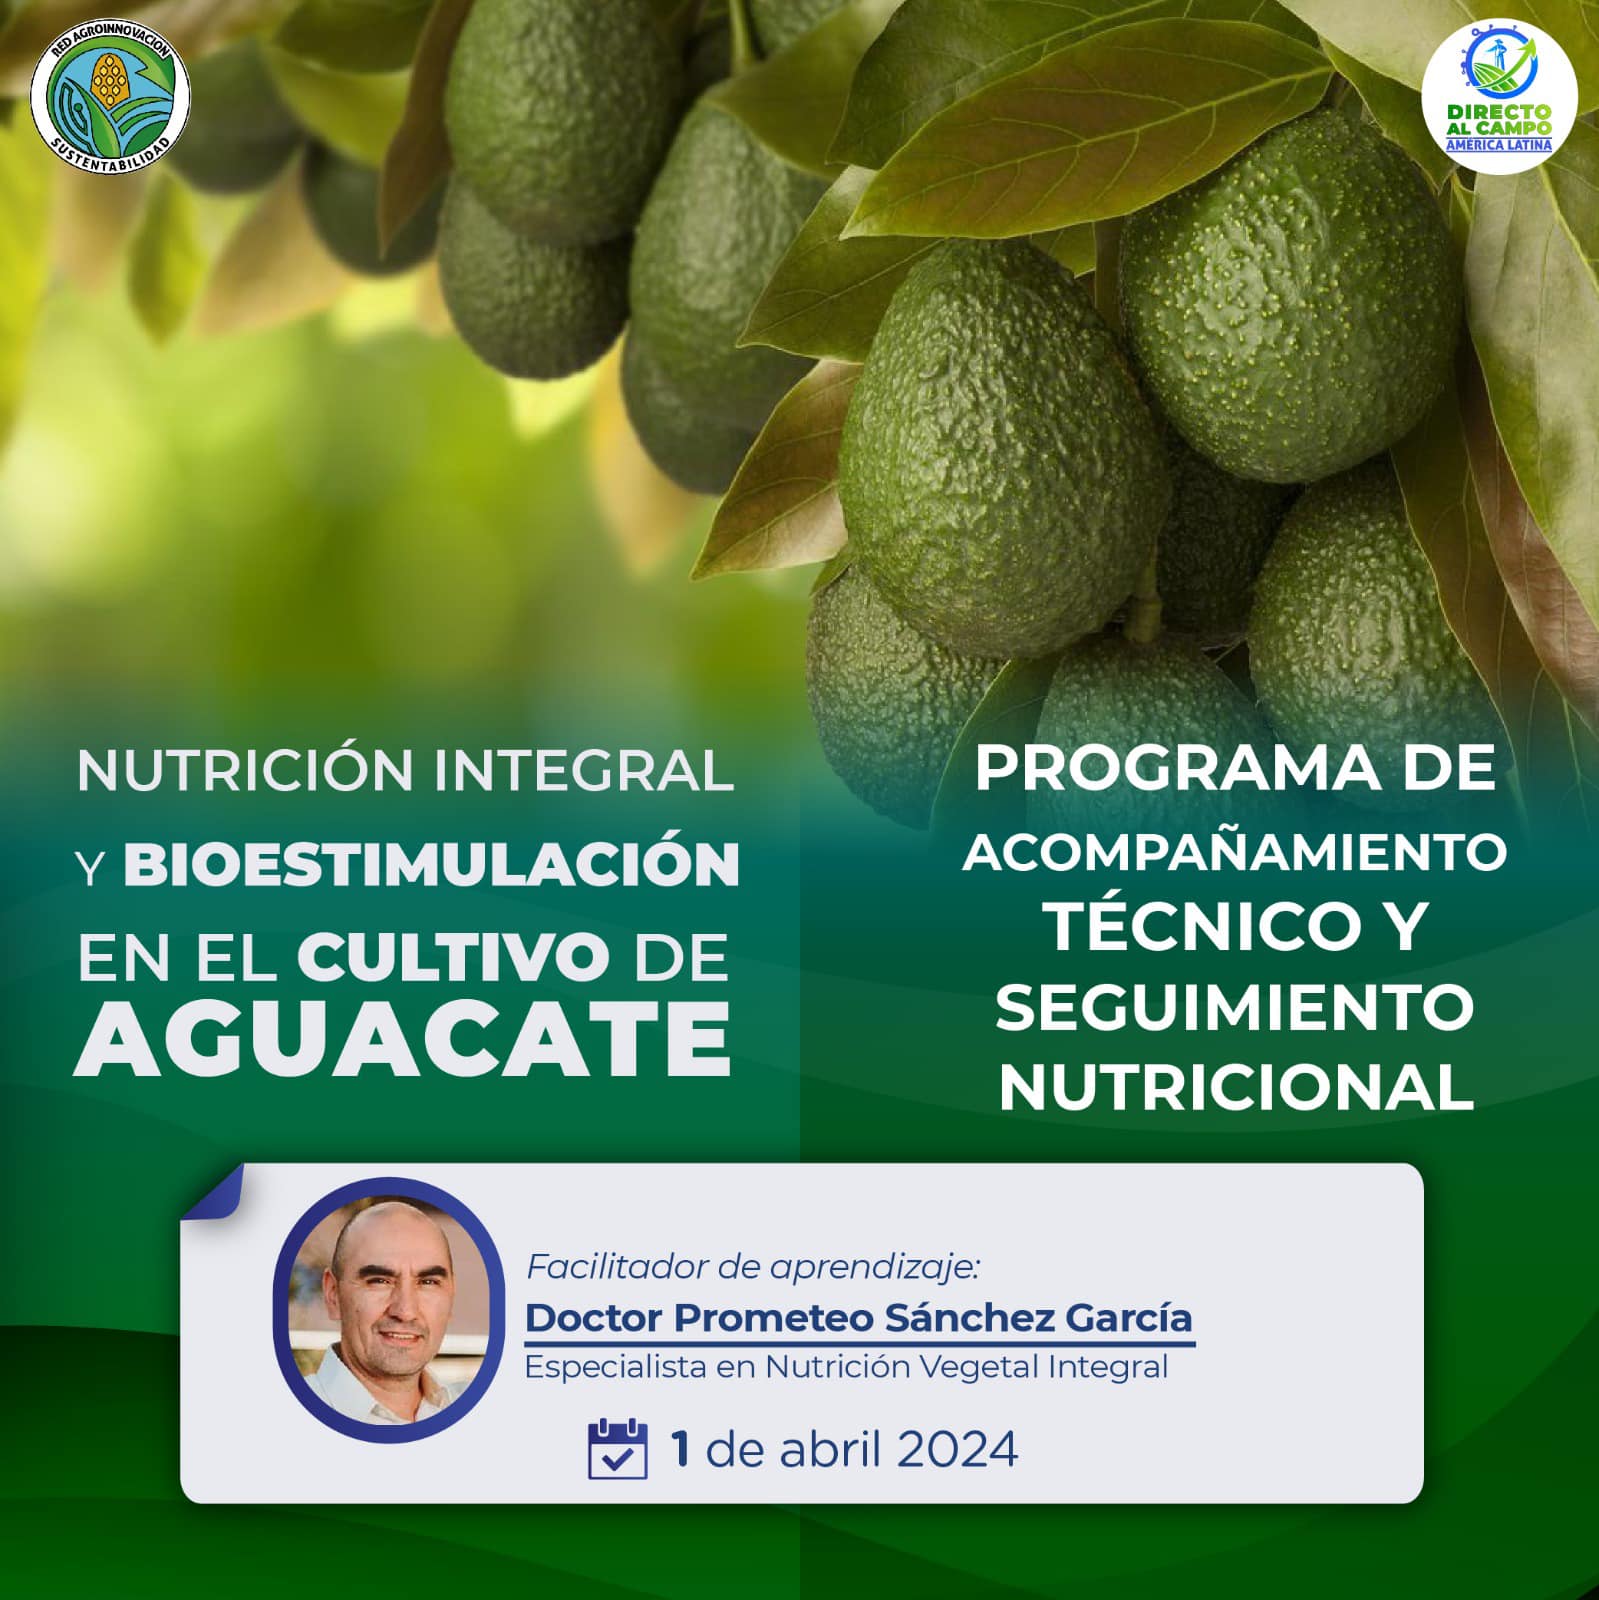 Cultivo de Aguacate: Nutrición Integral y Bioestimulación